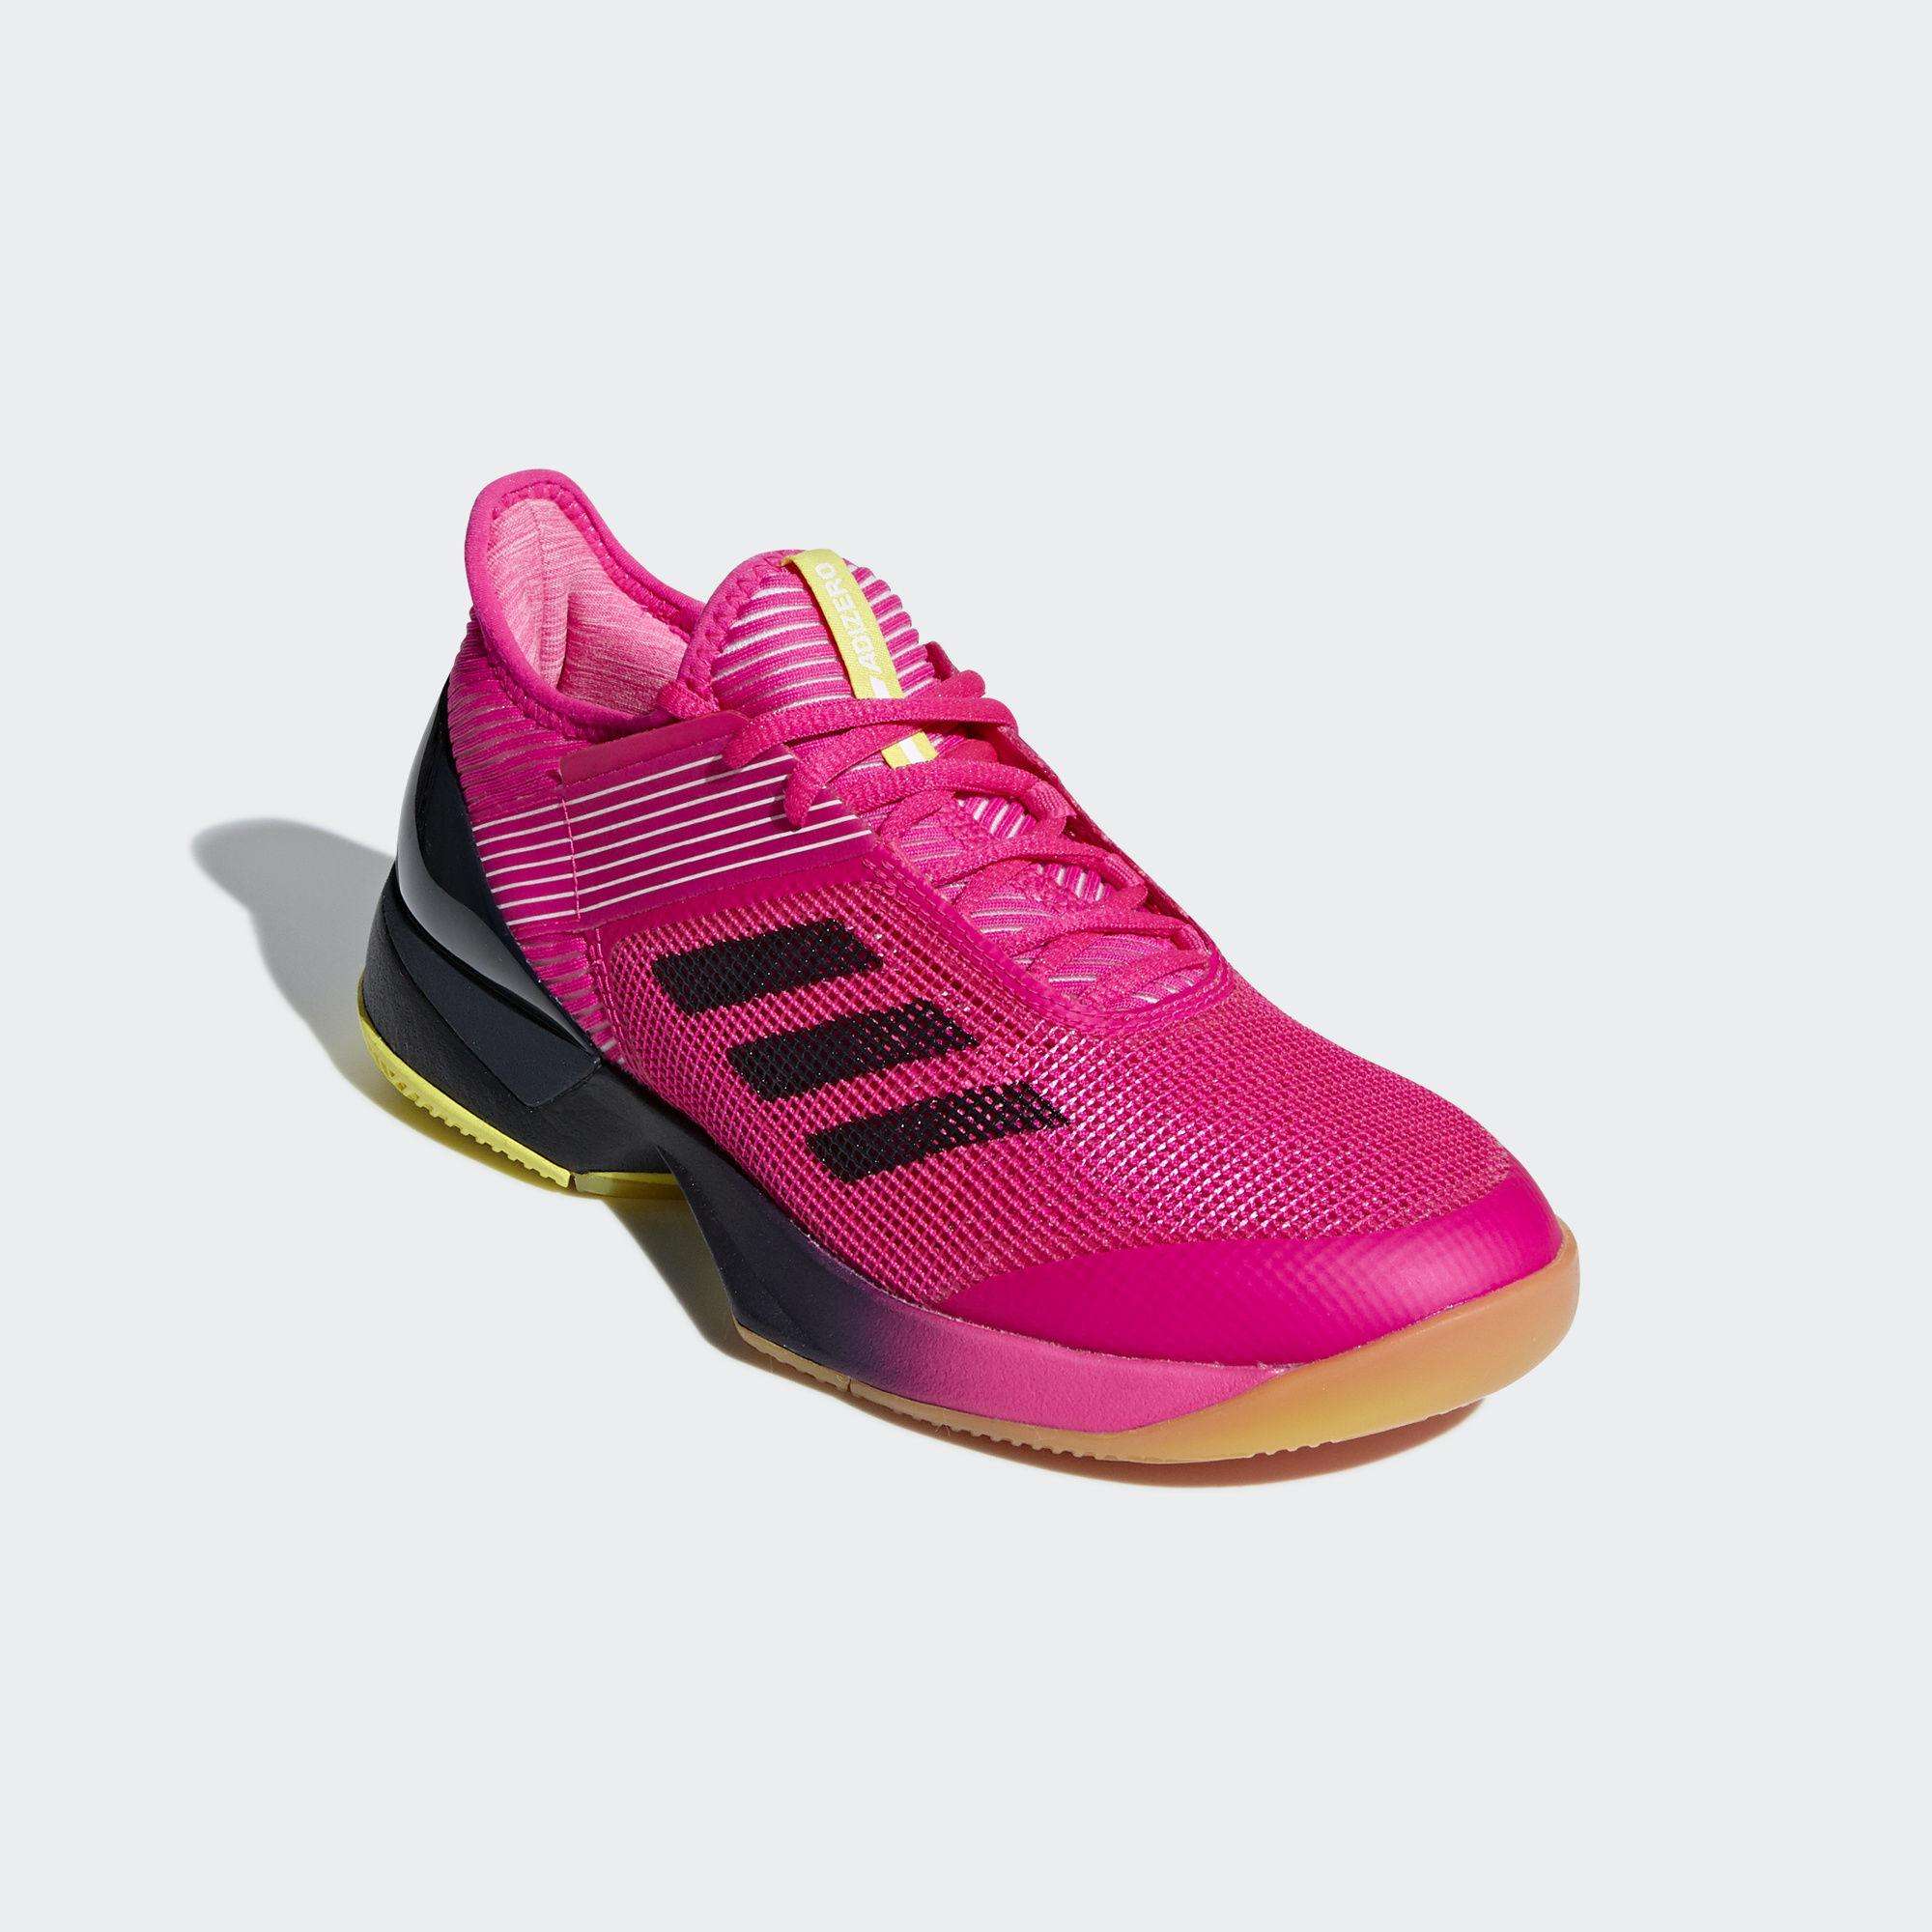 Adidas Womens Adizero Ubersonic 3.0 Tennis Shoes